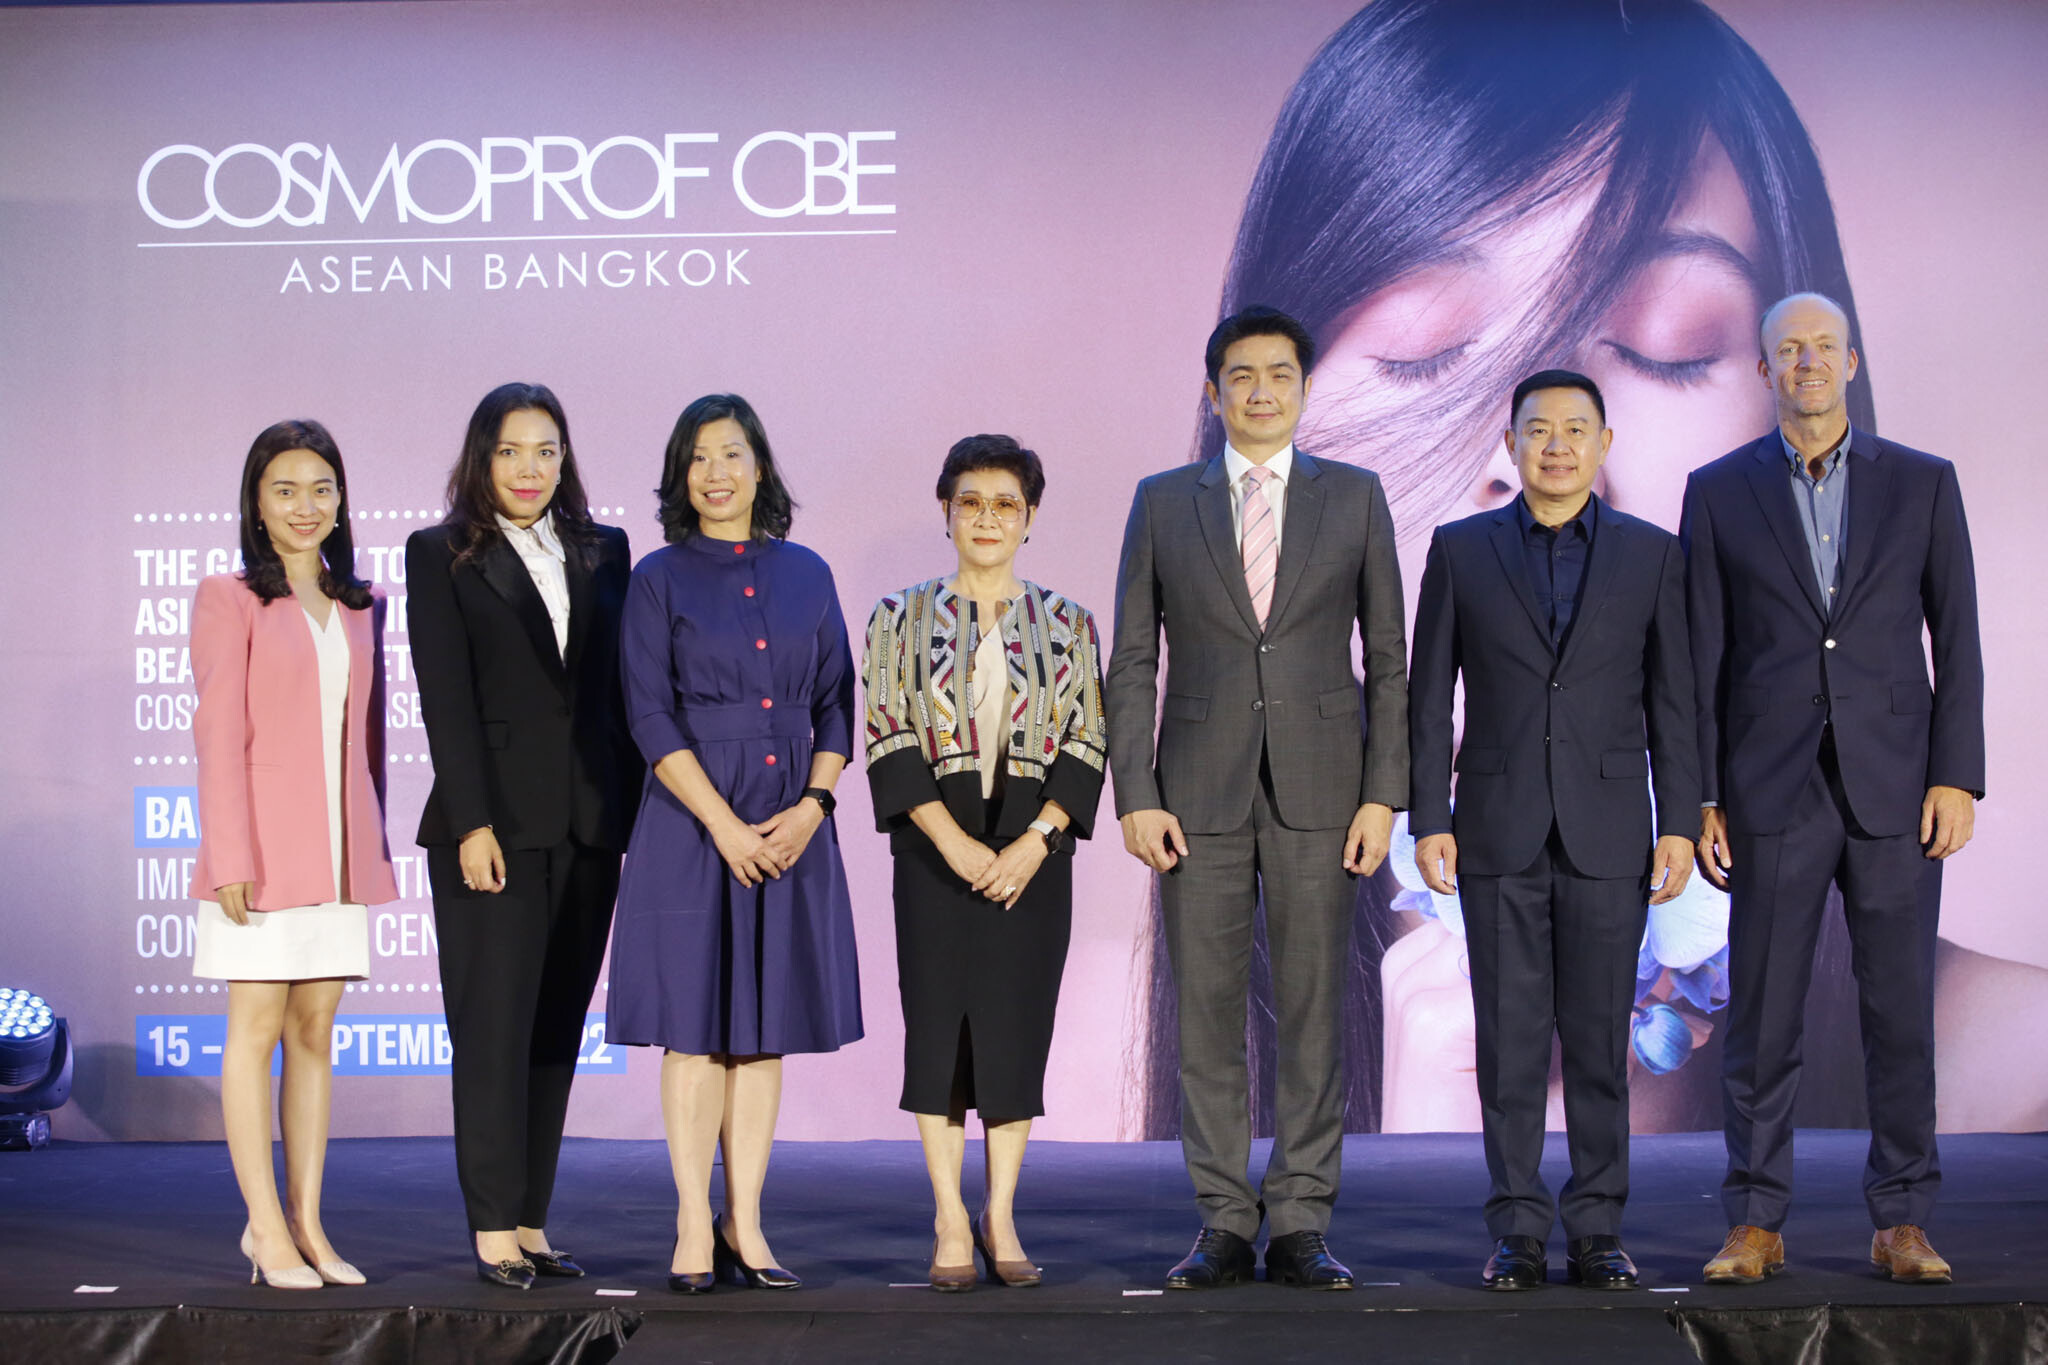 "อินฟอร์มา มาร์เก็ต" แถลงข่าวจัดงาน "Cosmoprof CBE ASEAN 2022" งานแสดงสินค้าเพื่อธุรกิจความงามระดับโลก